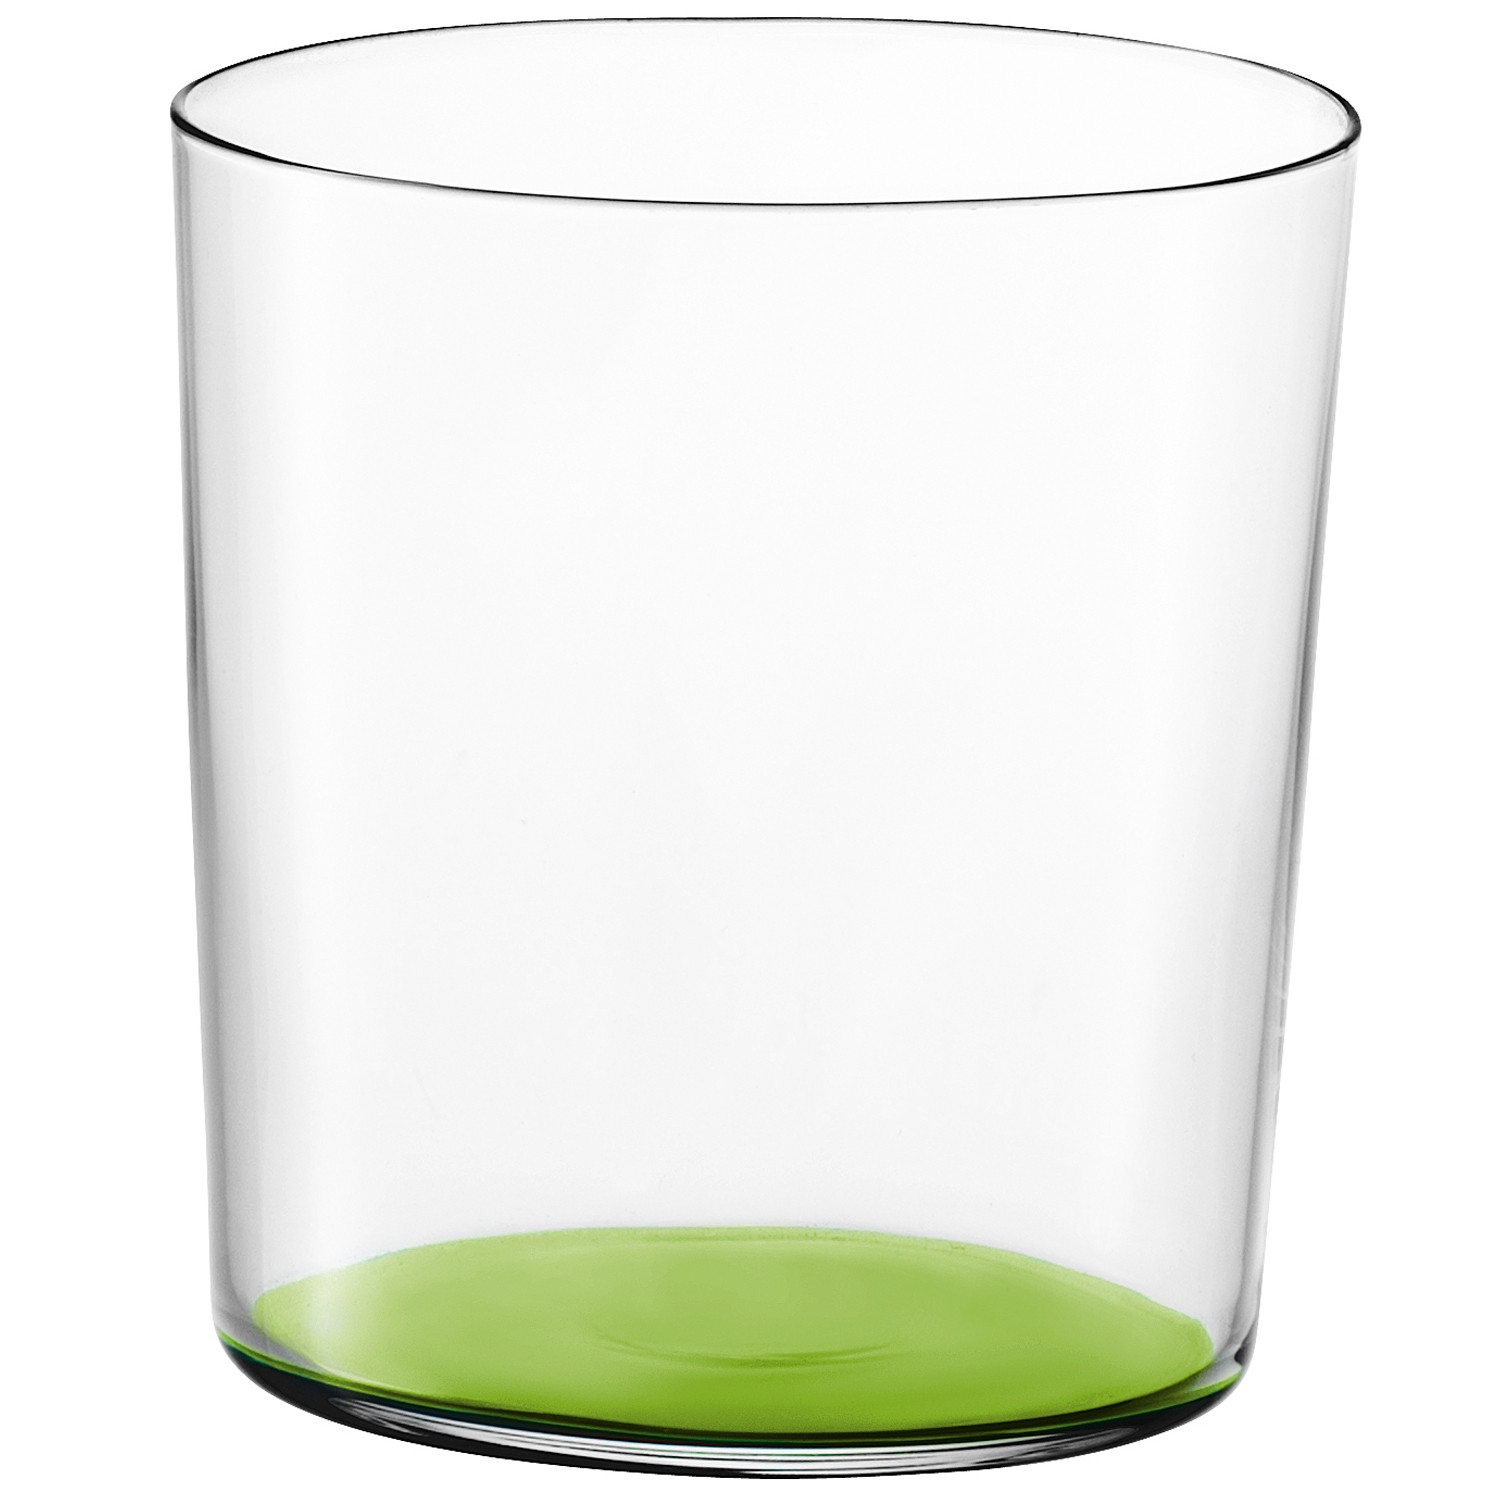 Gio bicchiere colorato 390ml Verde Limone1